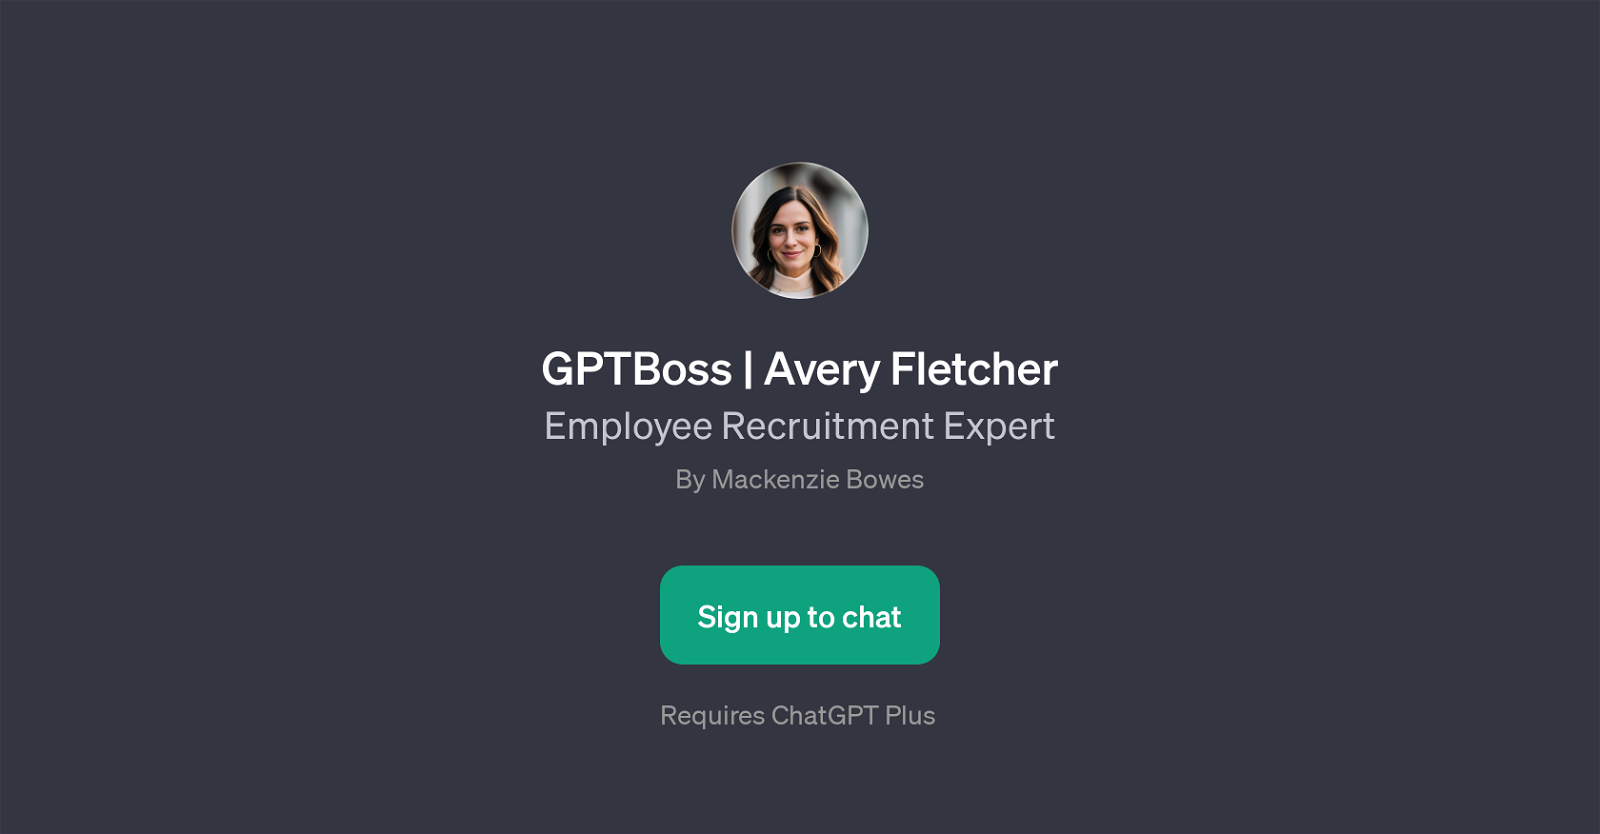 GPTBoss | Avery Fletcher website